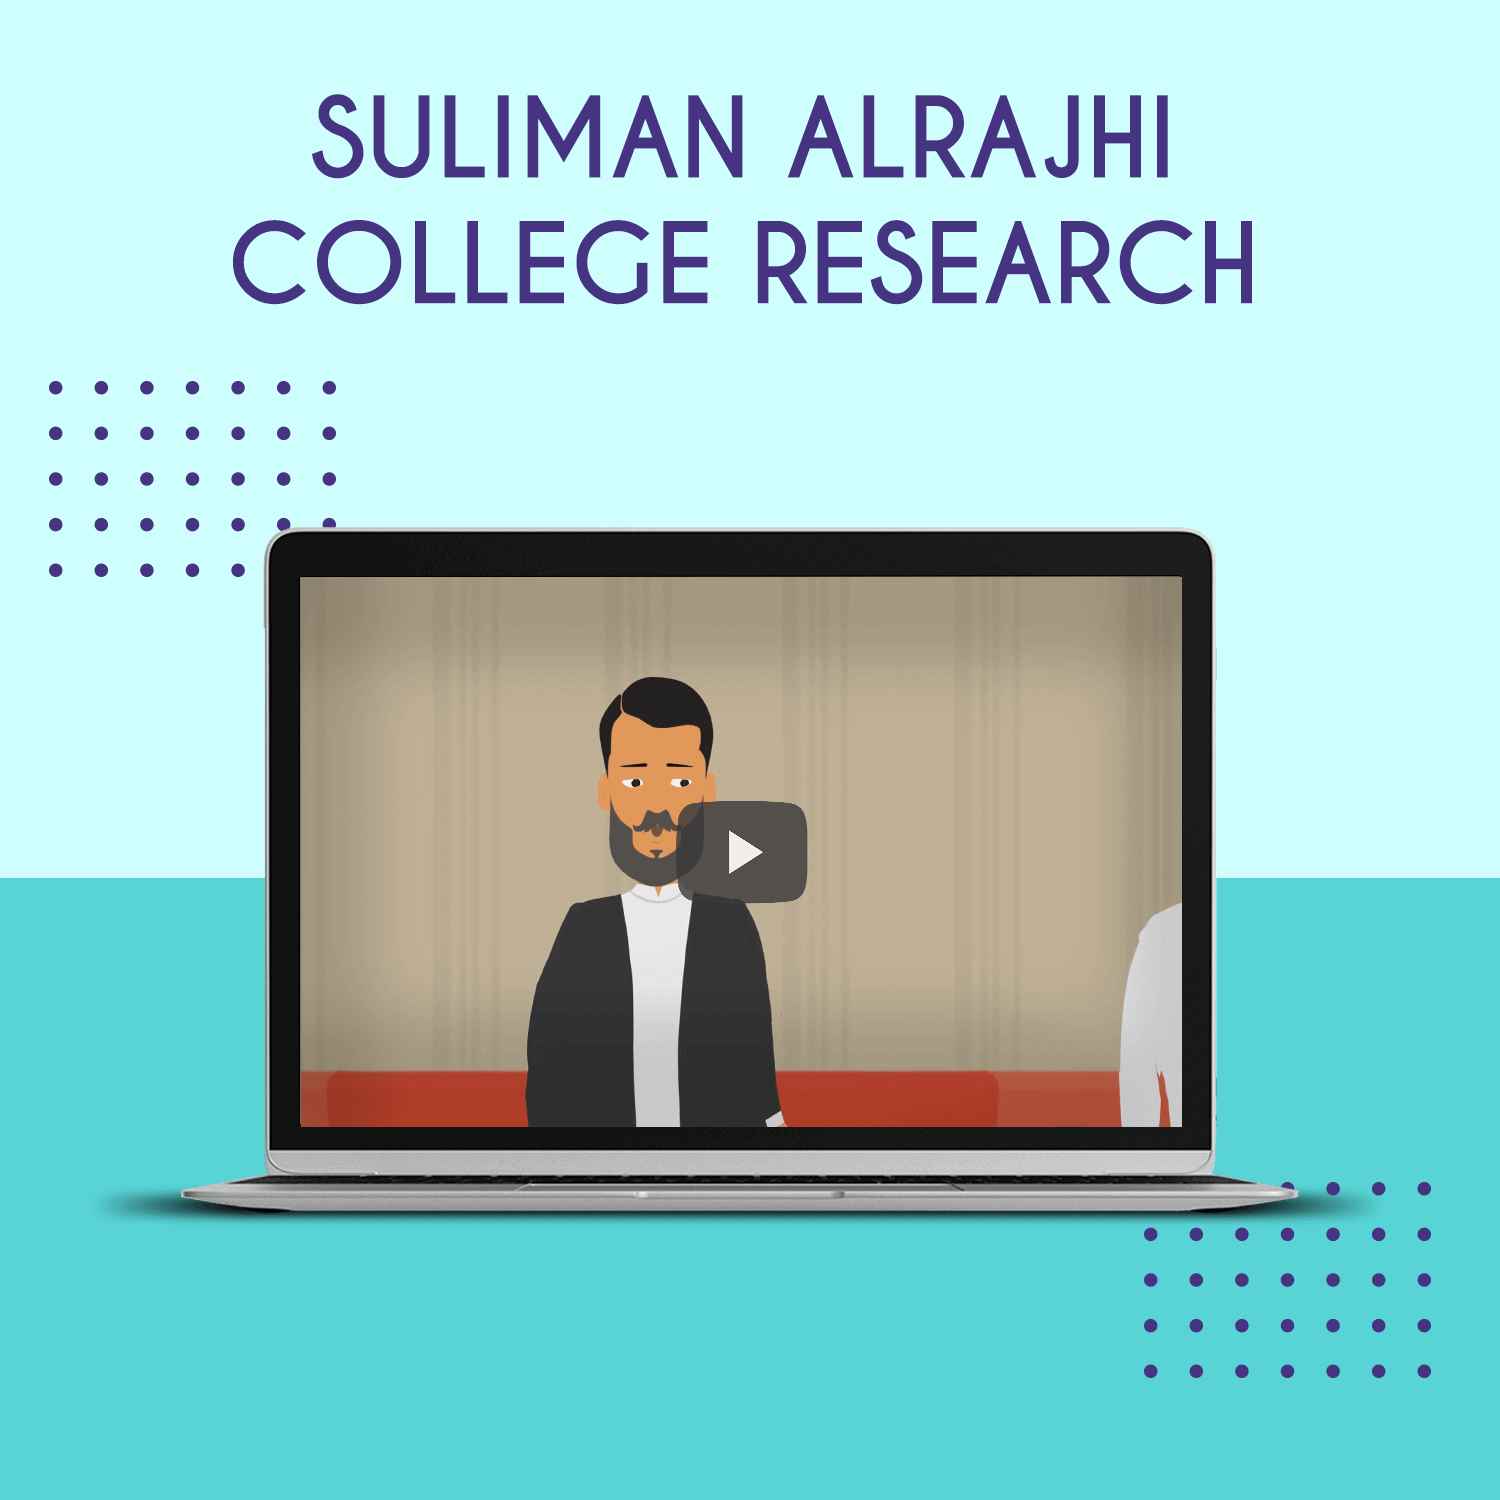 Suliman Alrajhi College Research